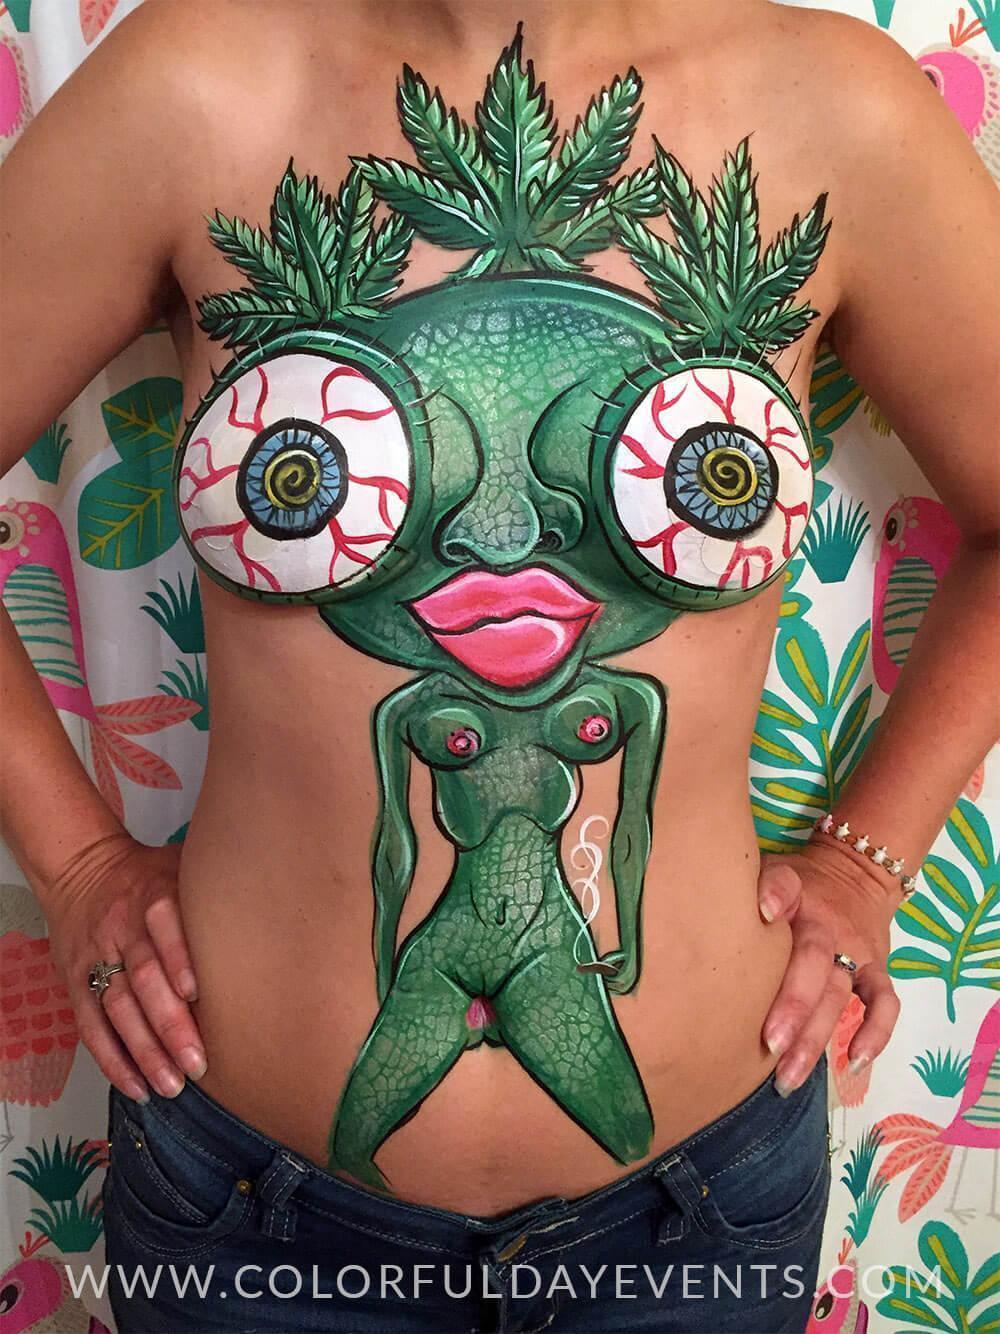 Fantasy fest body painting artist